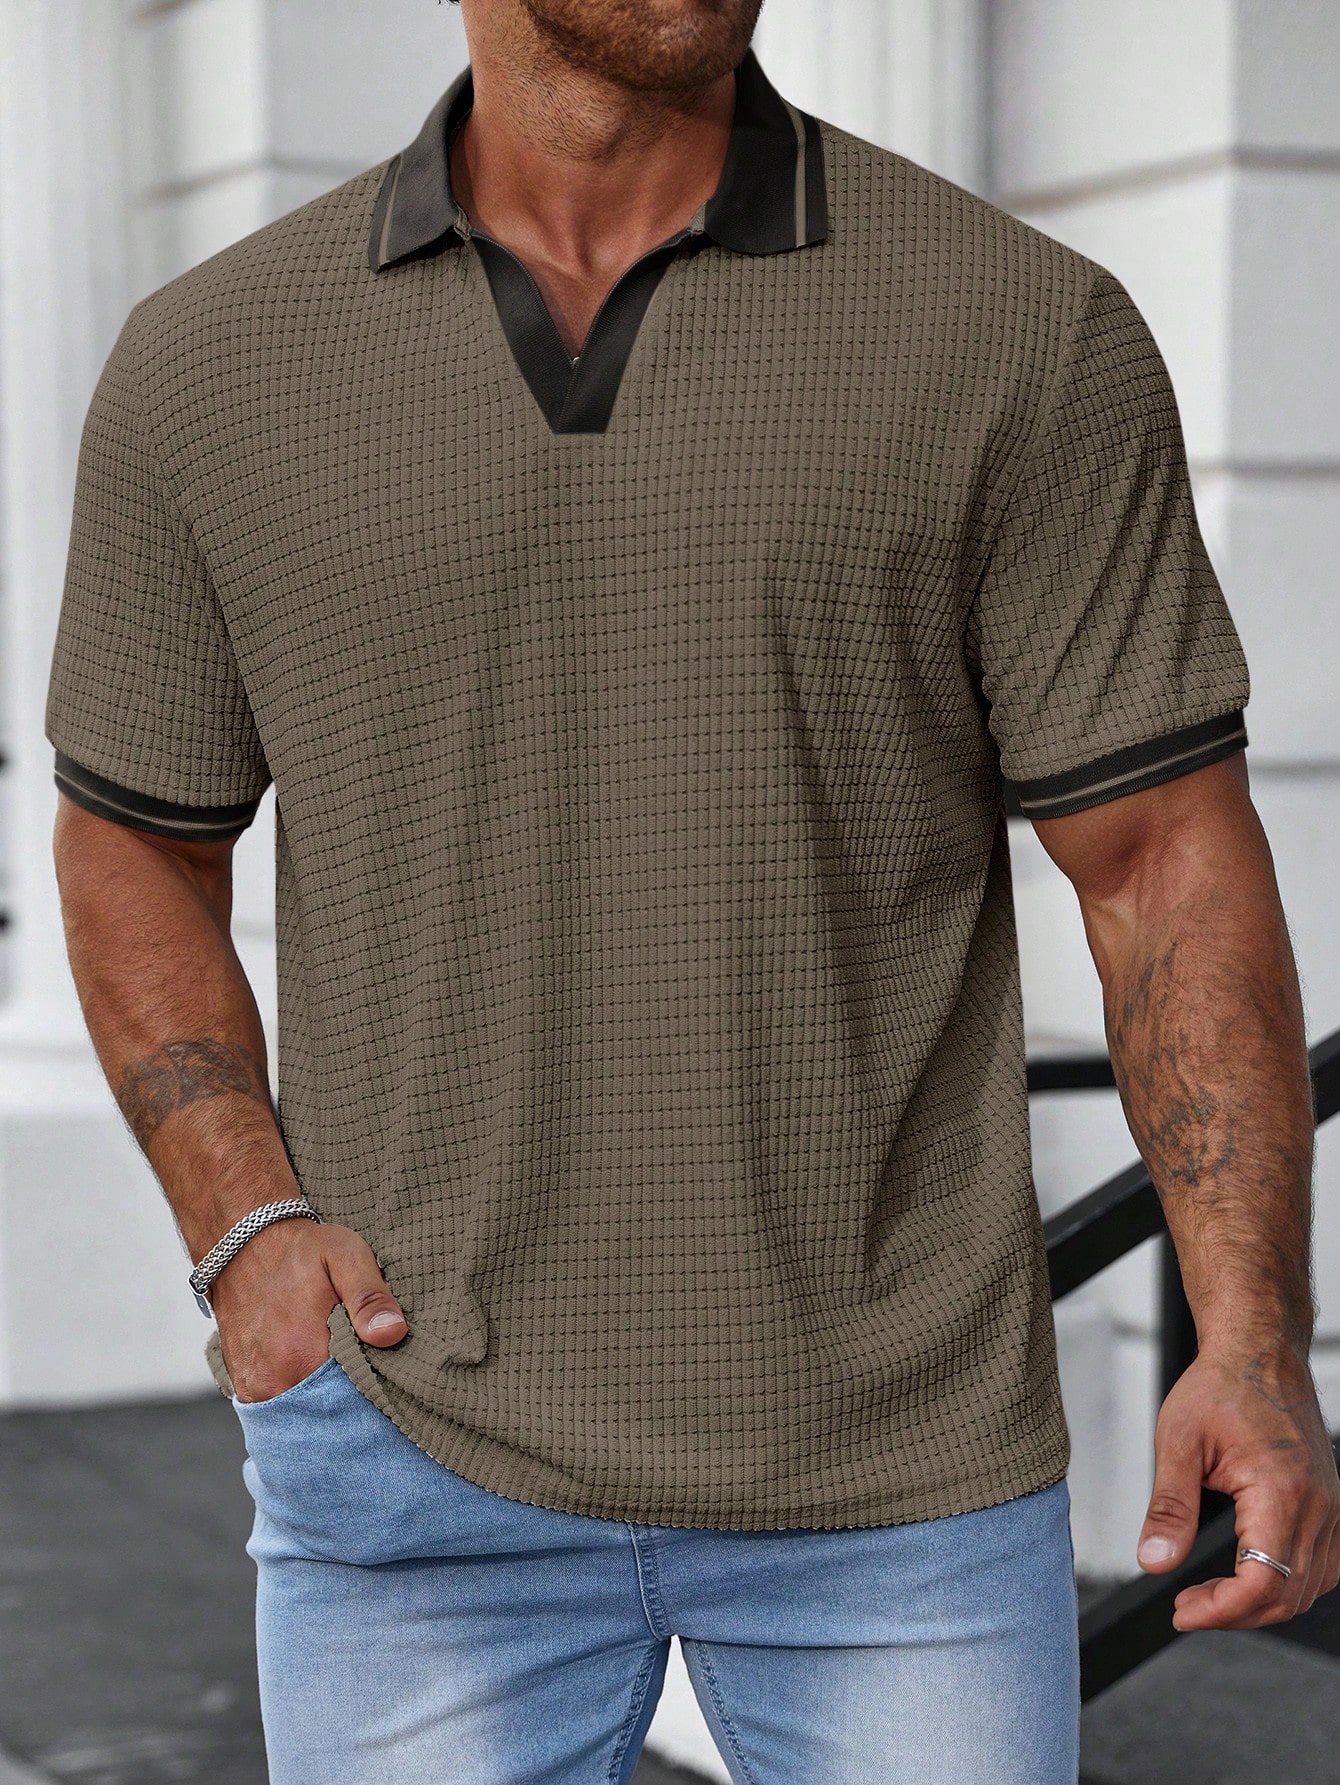 Мужская рубашка-поло больших размеров Manfinity Homme с цветными блоками, зеленый рубашка поло мужская с коротким рукавом на пуговицах в полоску